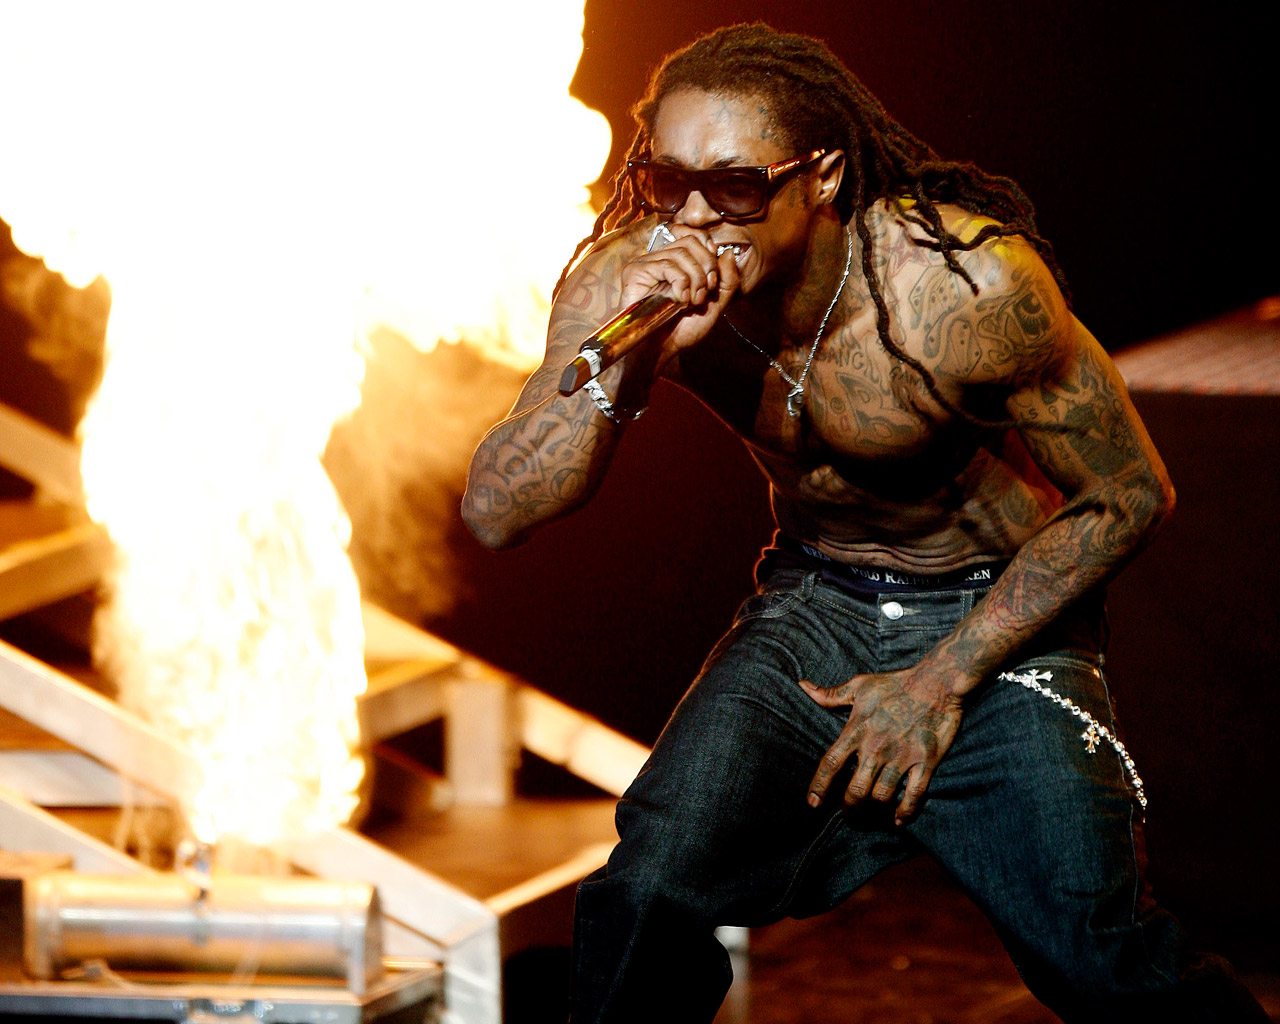 miley cyrus eyebrows: Lil Wayne Body Tattoos